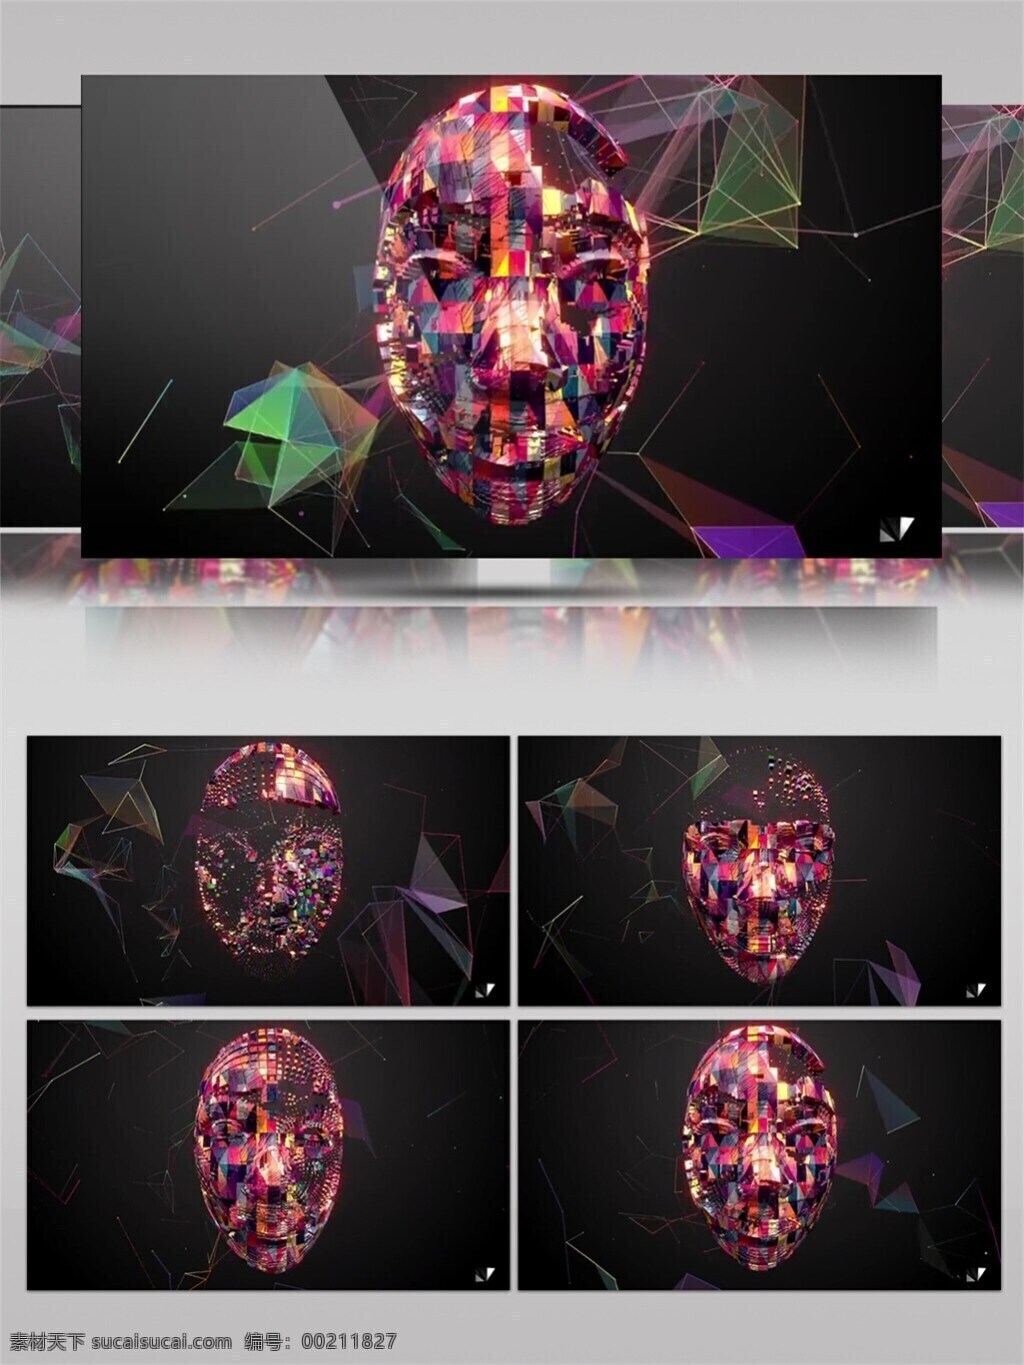 彩色 动感 机器人 头像 高清 视频 3d视频素材 动态流光 光芒四射 浩瀚宇宙 机器 星空背景 音乐